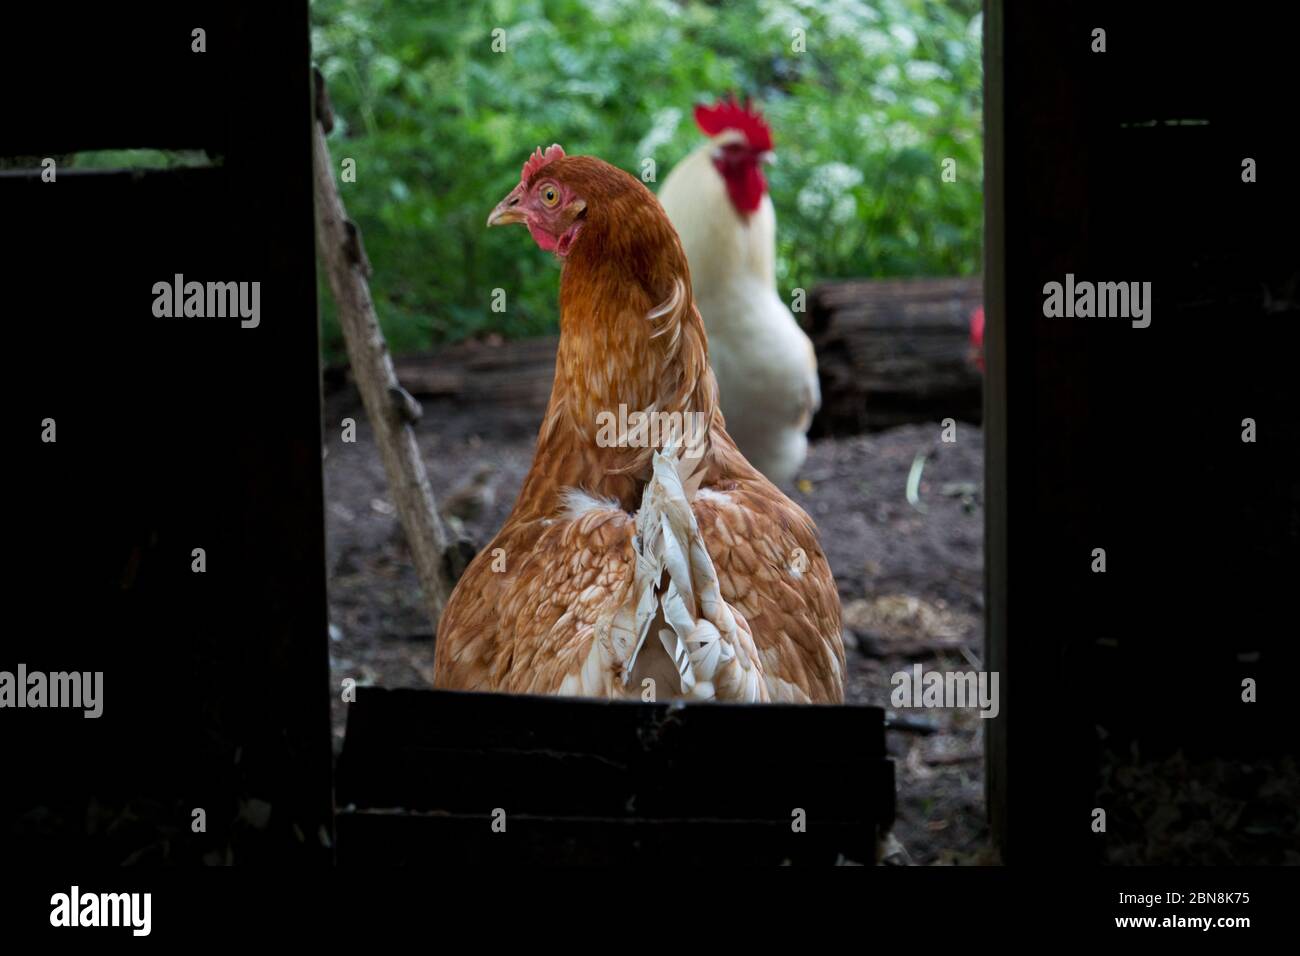 Durch die Tür des Hühnerstall auf ein braunes Huhn und einen weißen Hahn schauen Stockfoto